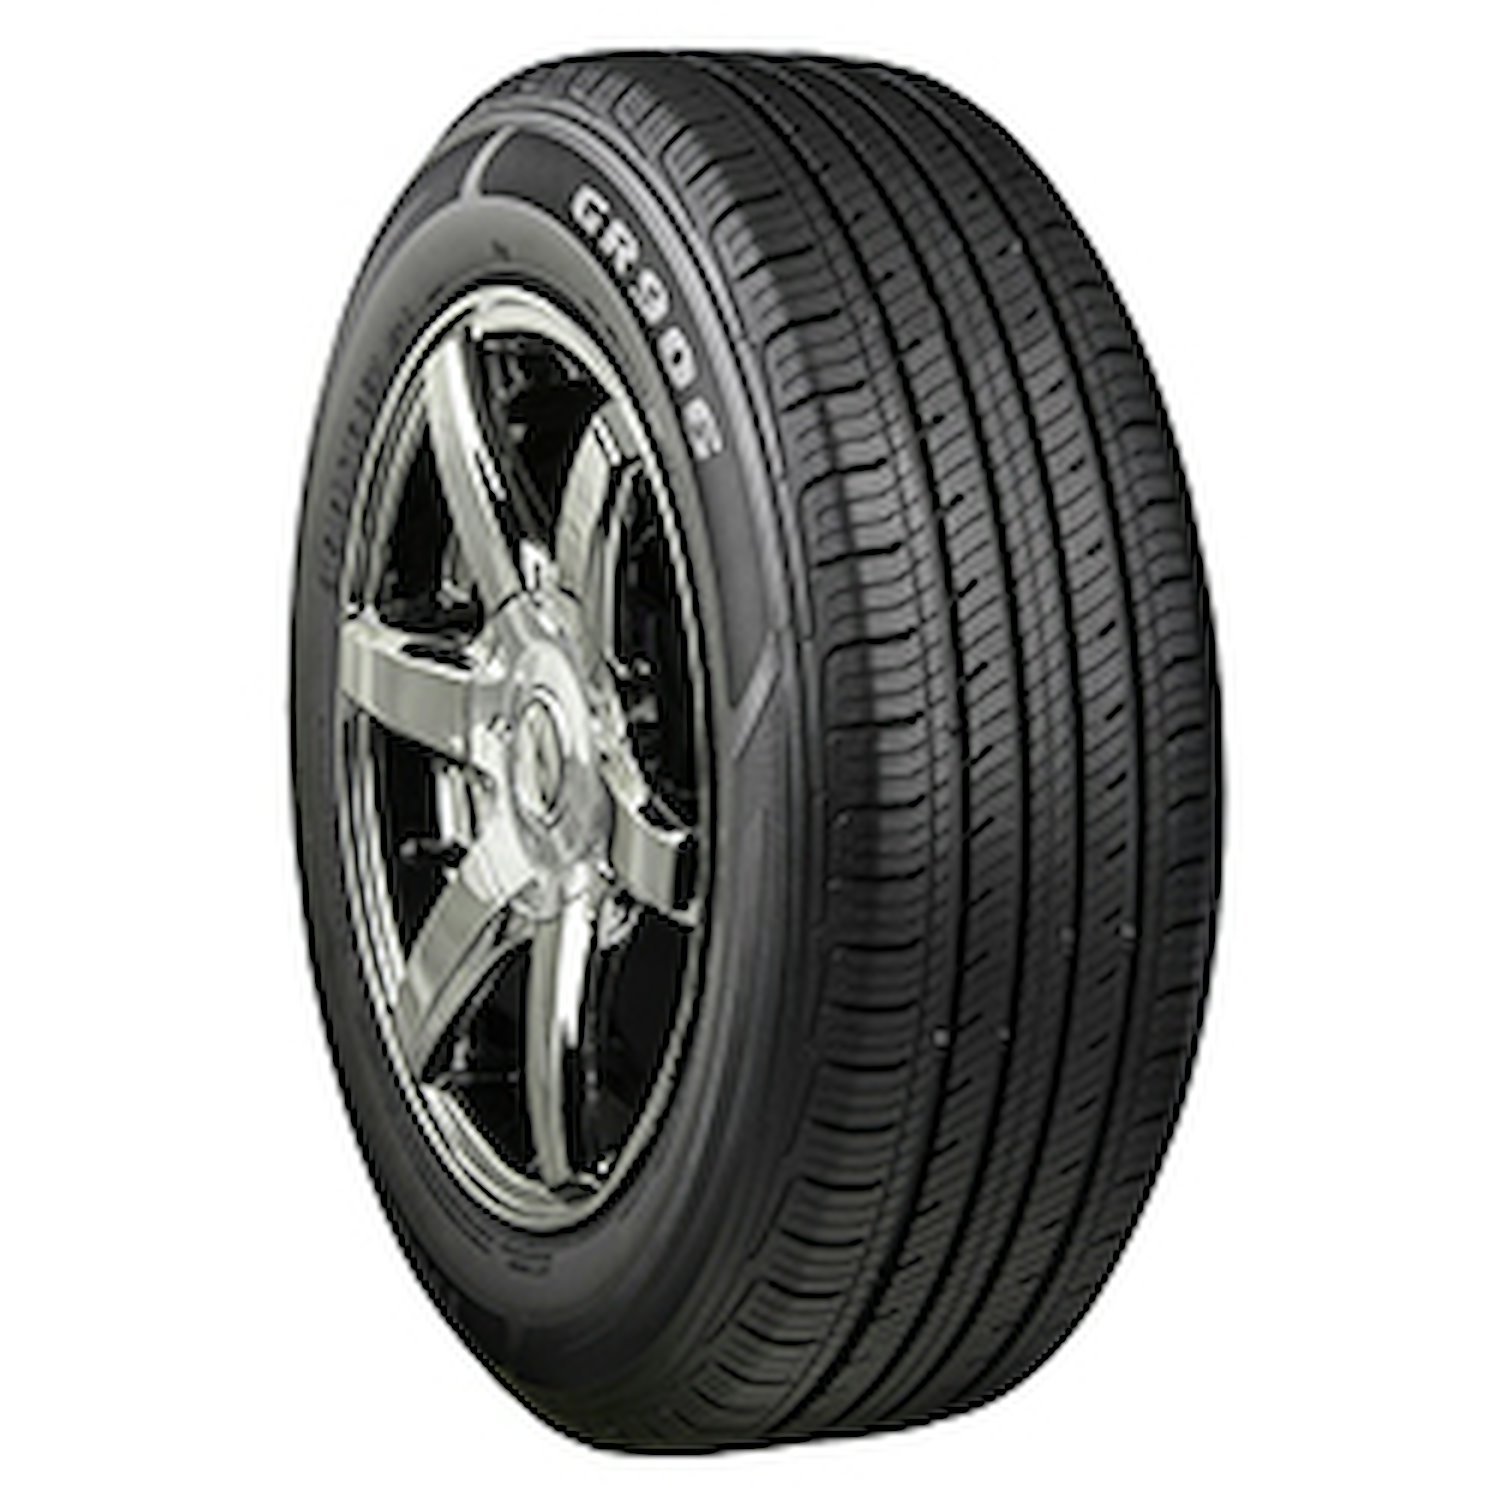 GR906 Tire, 225/60R17 99H